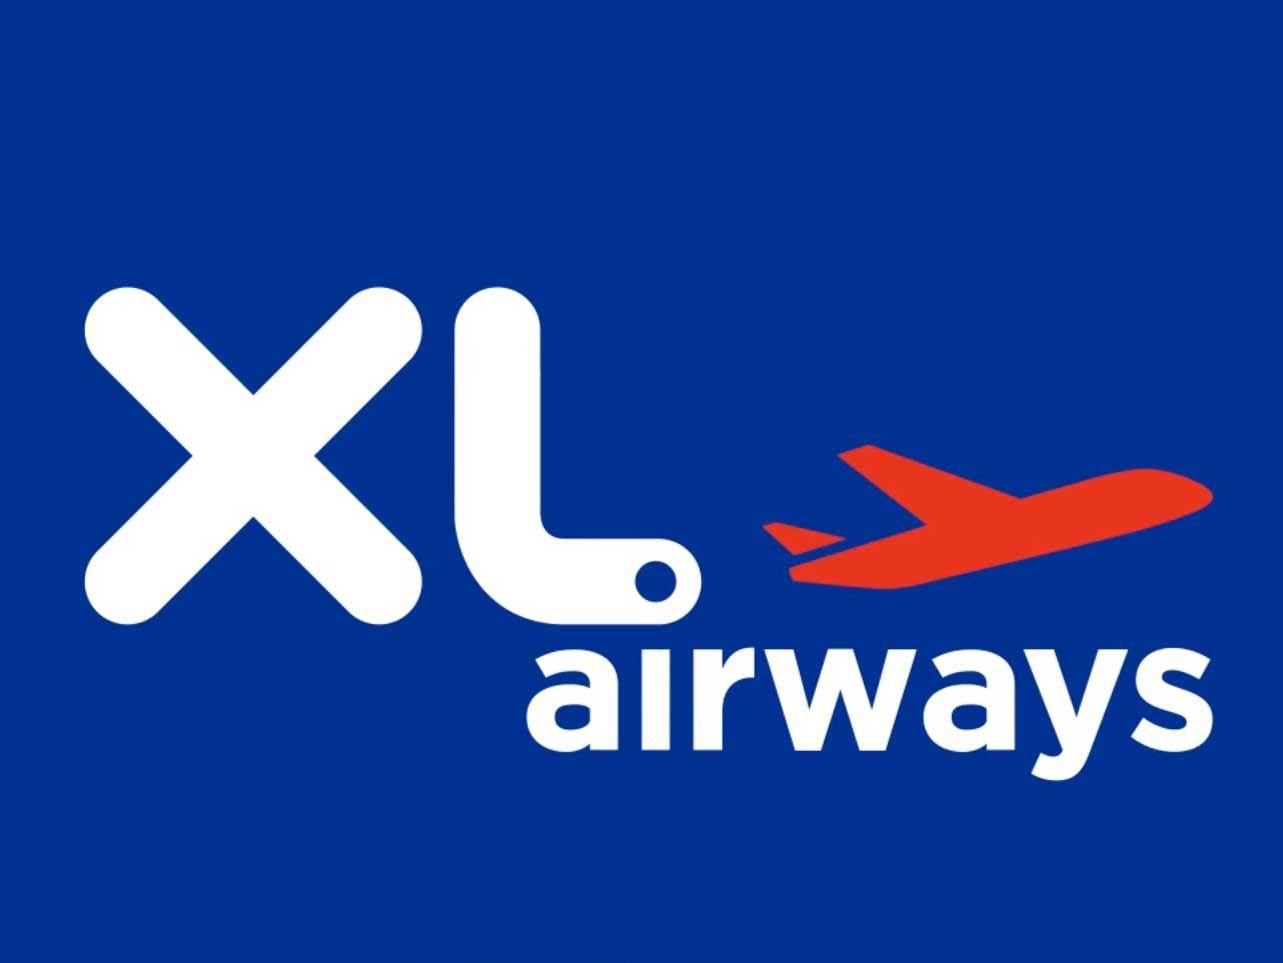 Leading Airline Logo - XL Airways : nouveau logo, nouvelle campagne de marketing. Logos